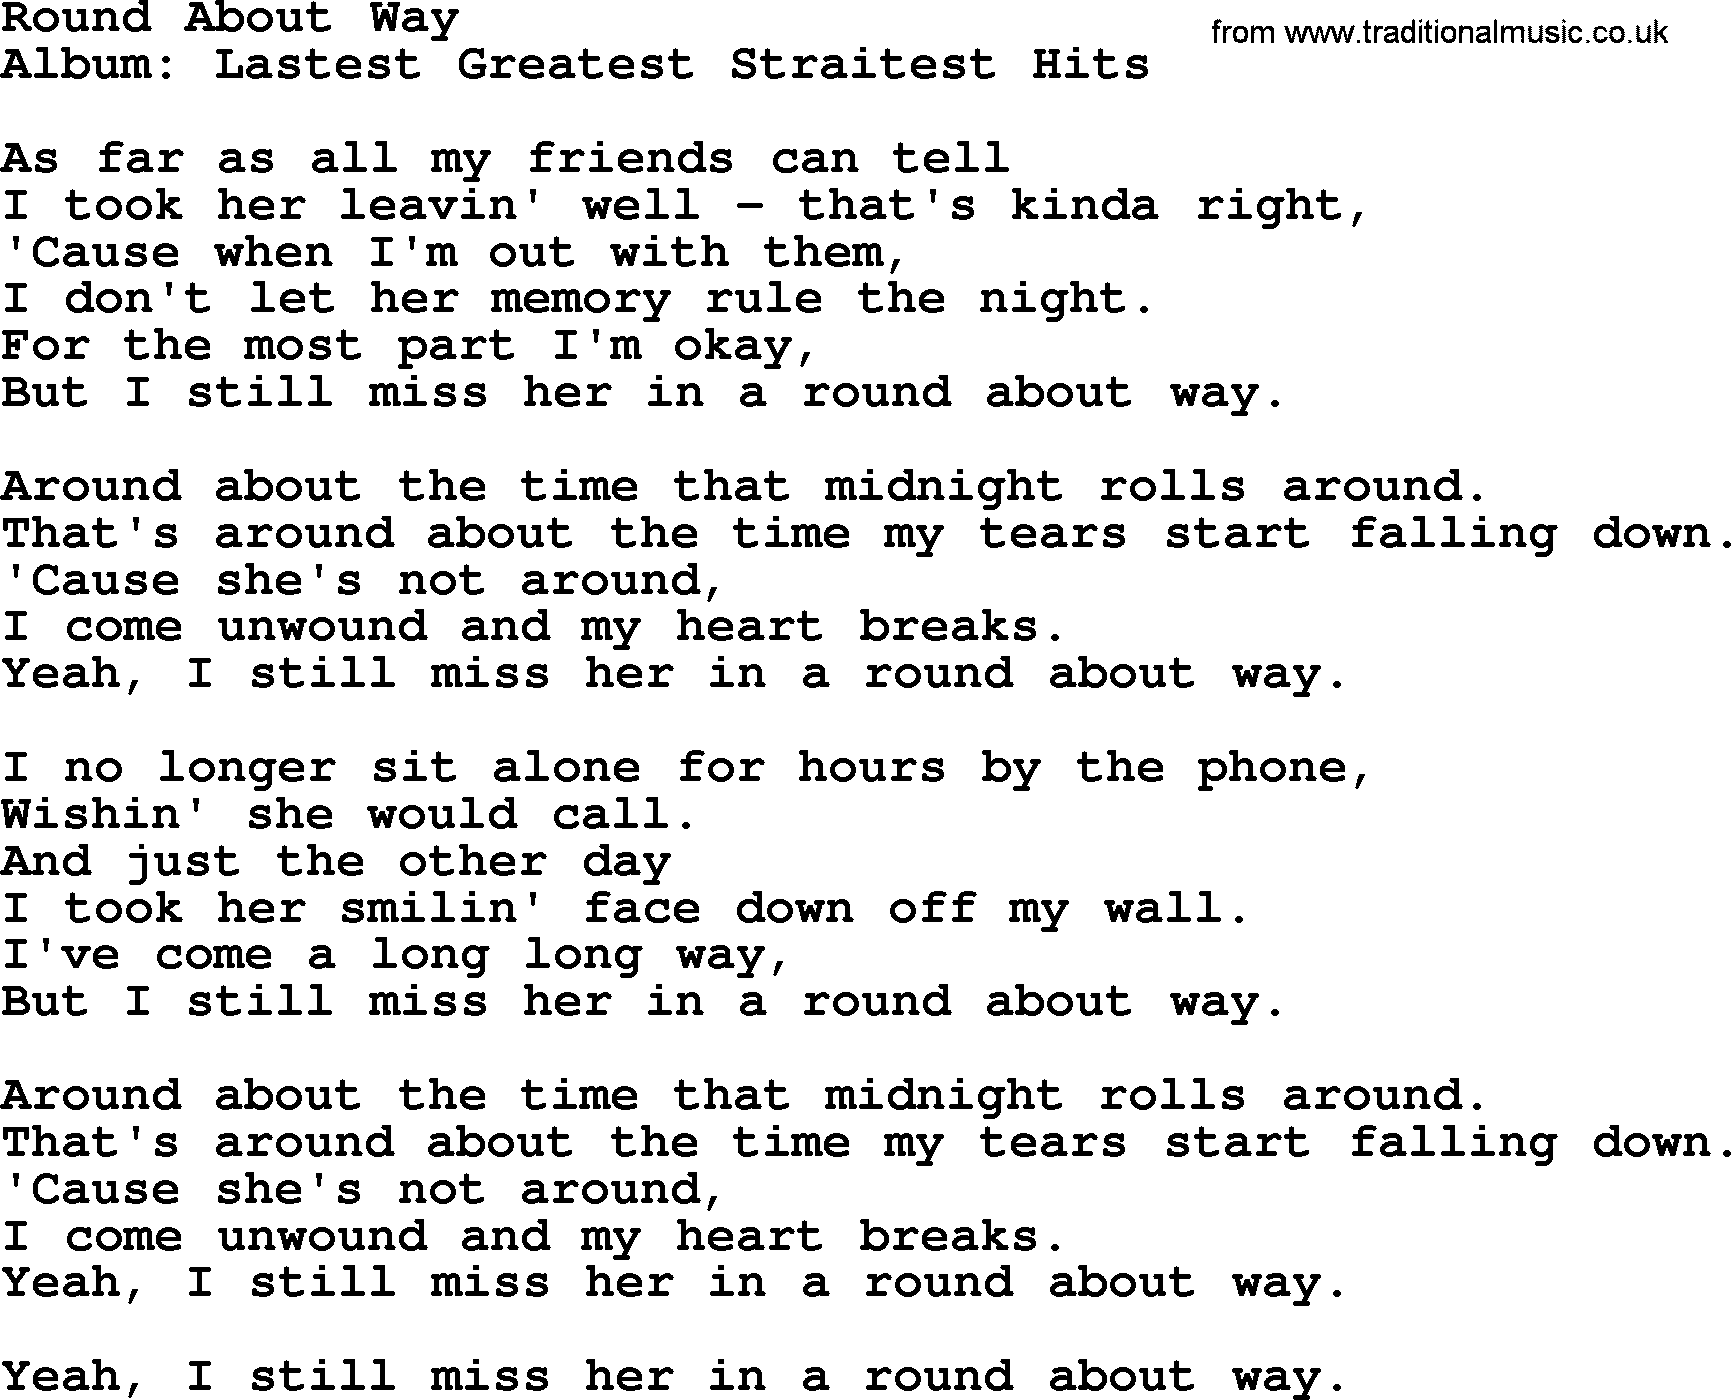 George Strait song: Round About Way, lyrics